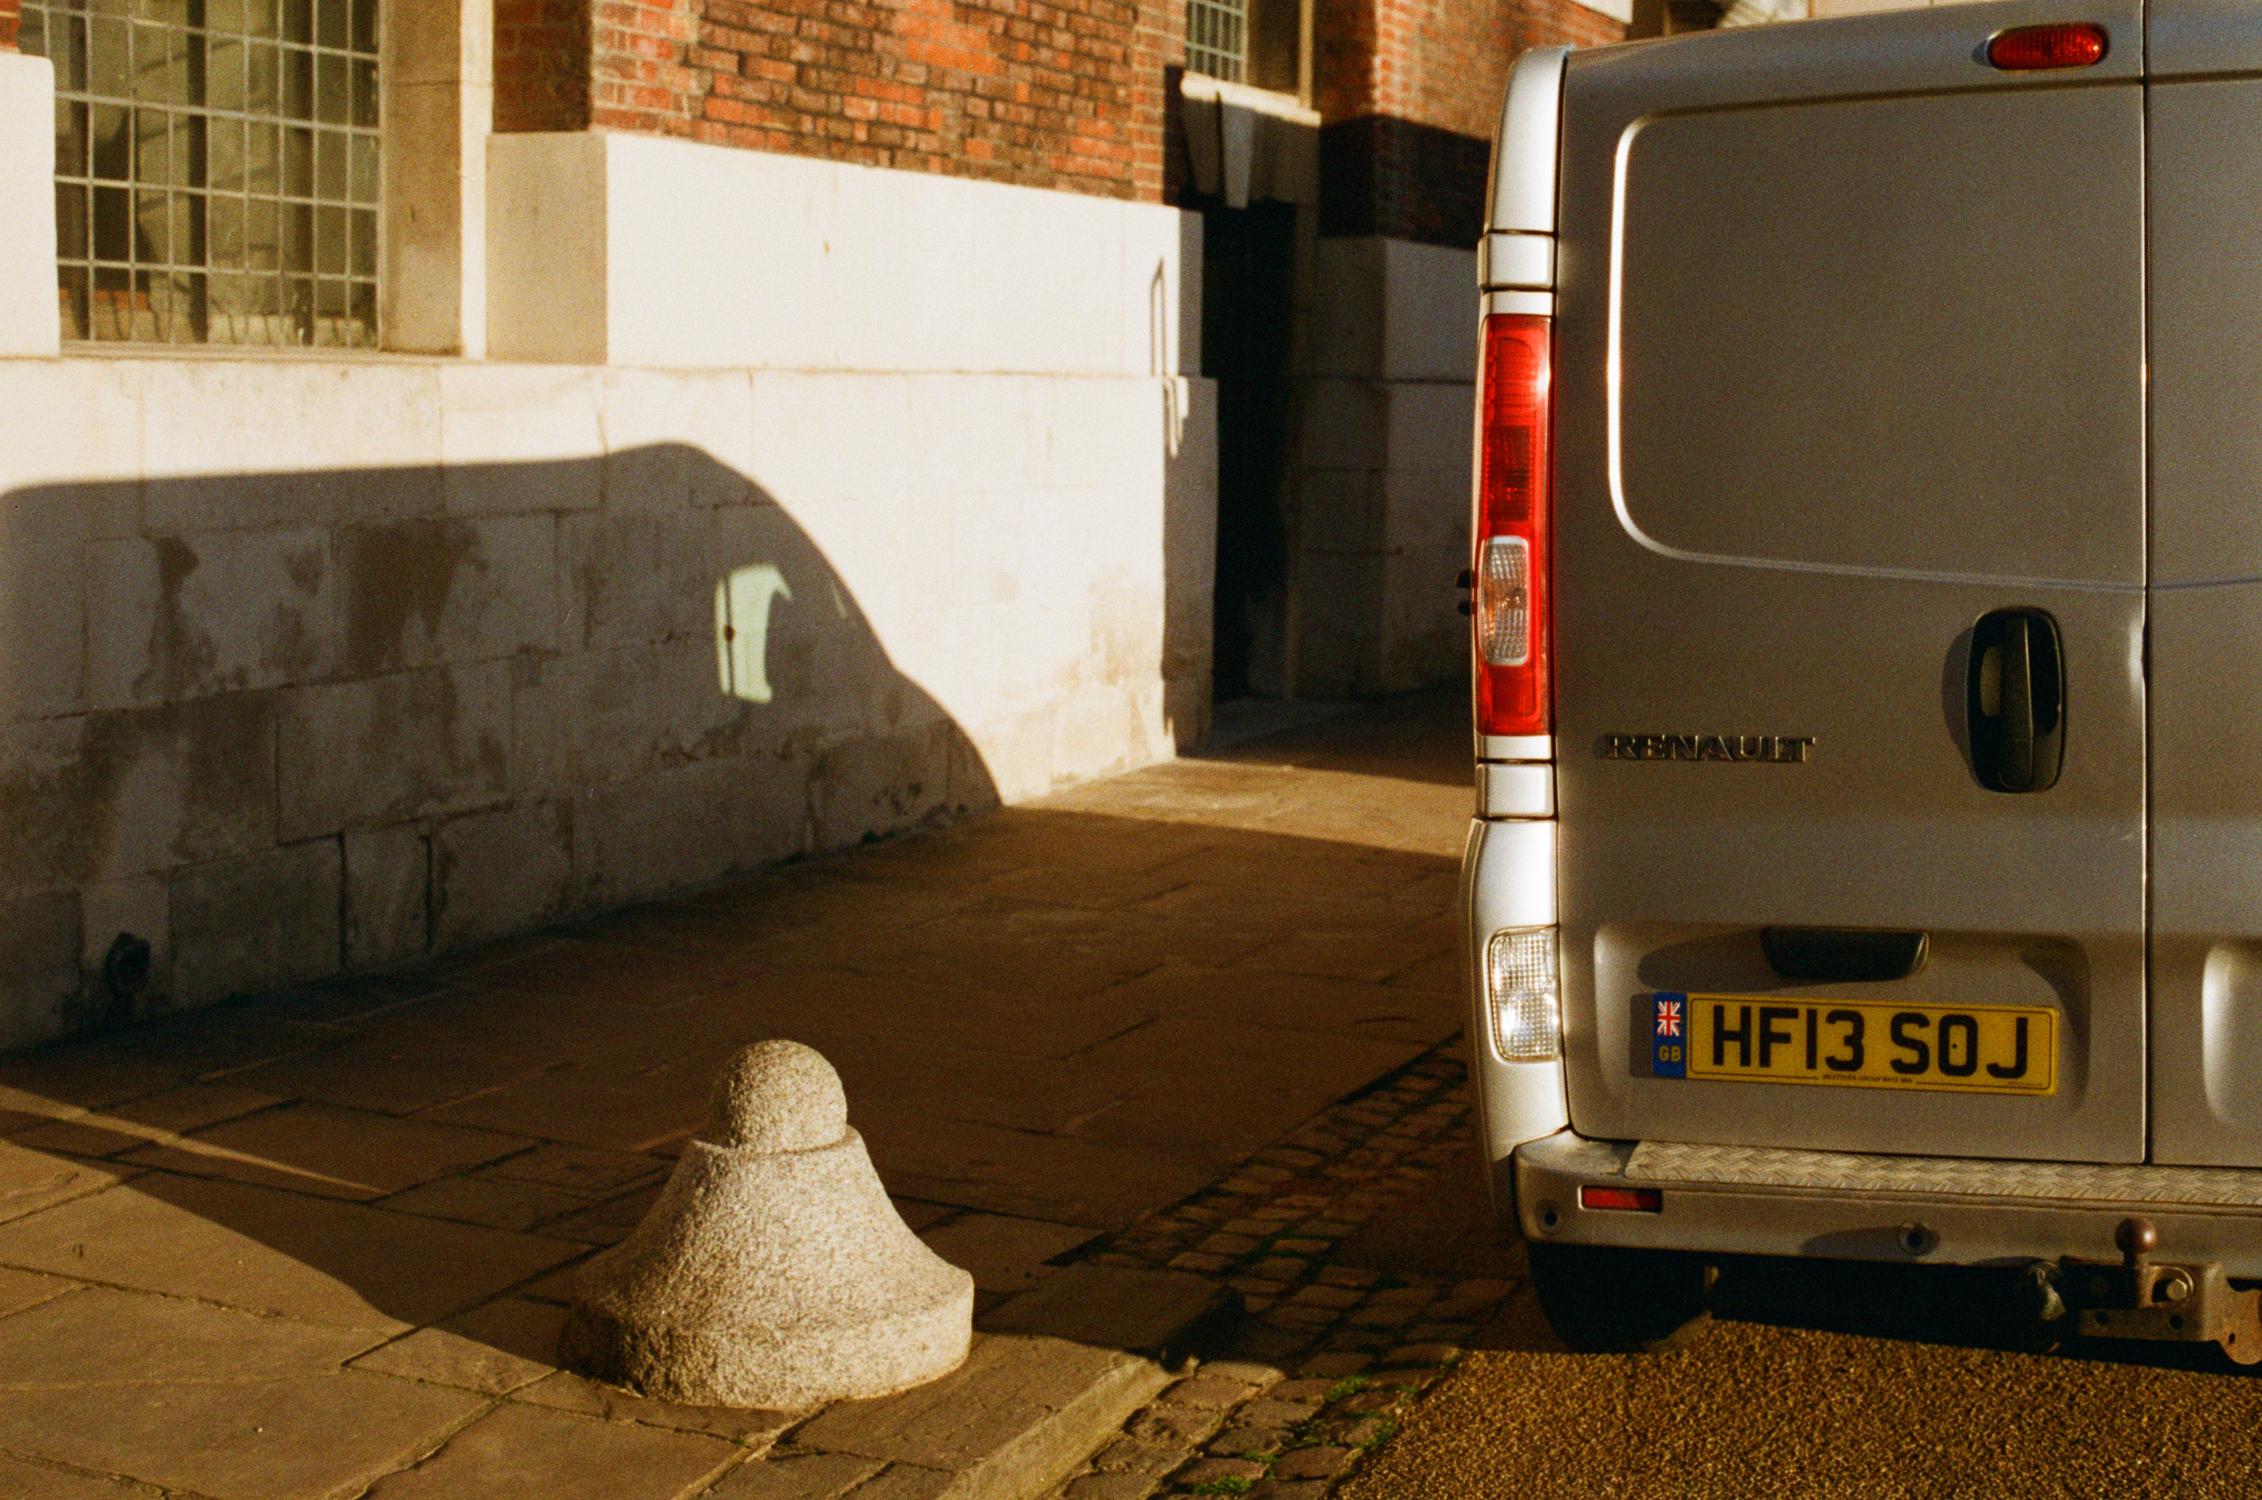 Shadow of van and van (Pic: Stephen Dowling)